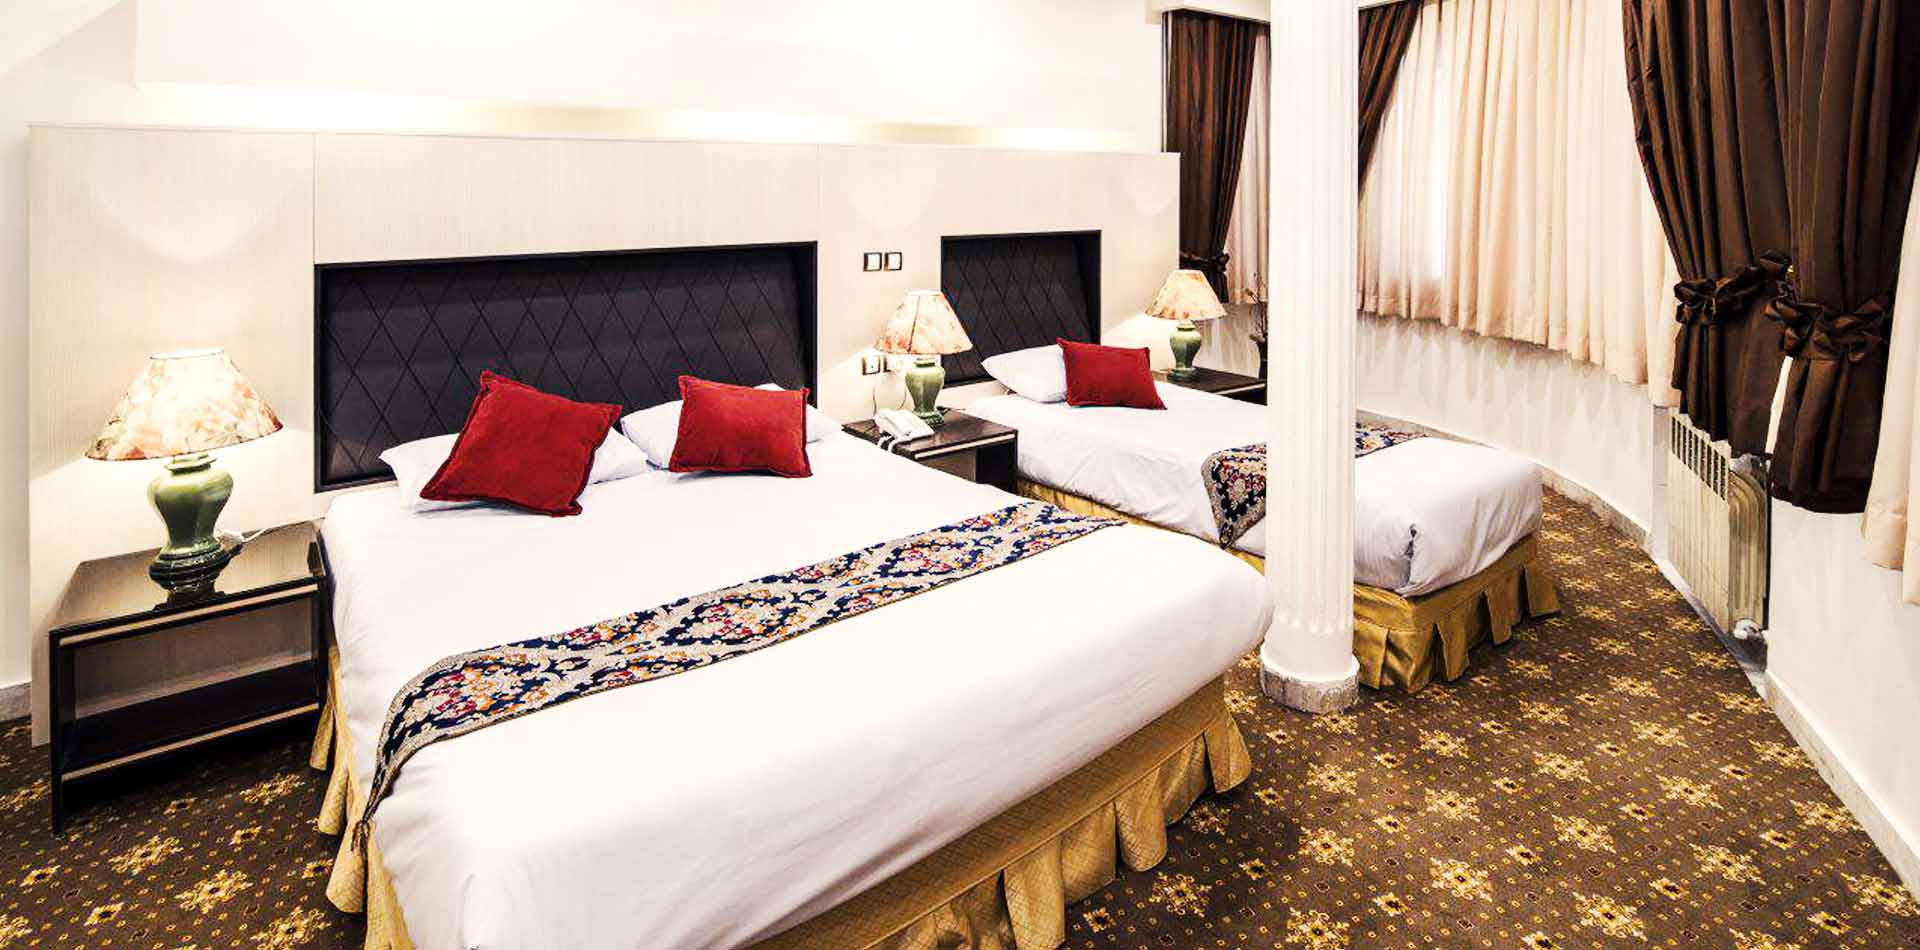 Three Beds Room,Tehran Morvarid Hotel ,Tehran hotels, iran hotels  ,3 star hotel in tehran